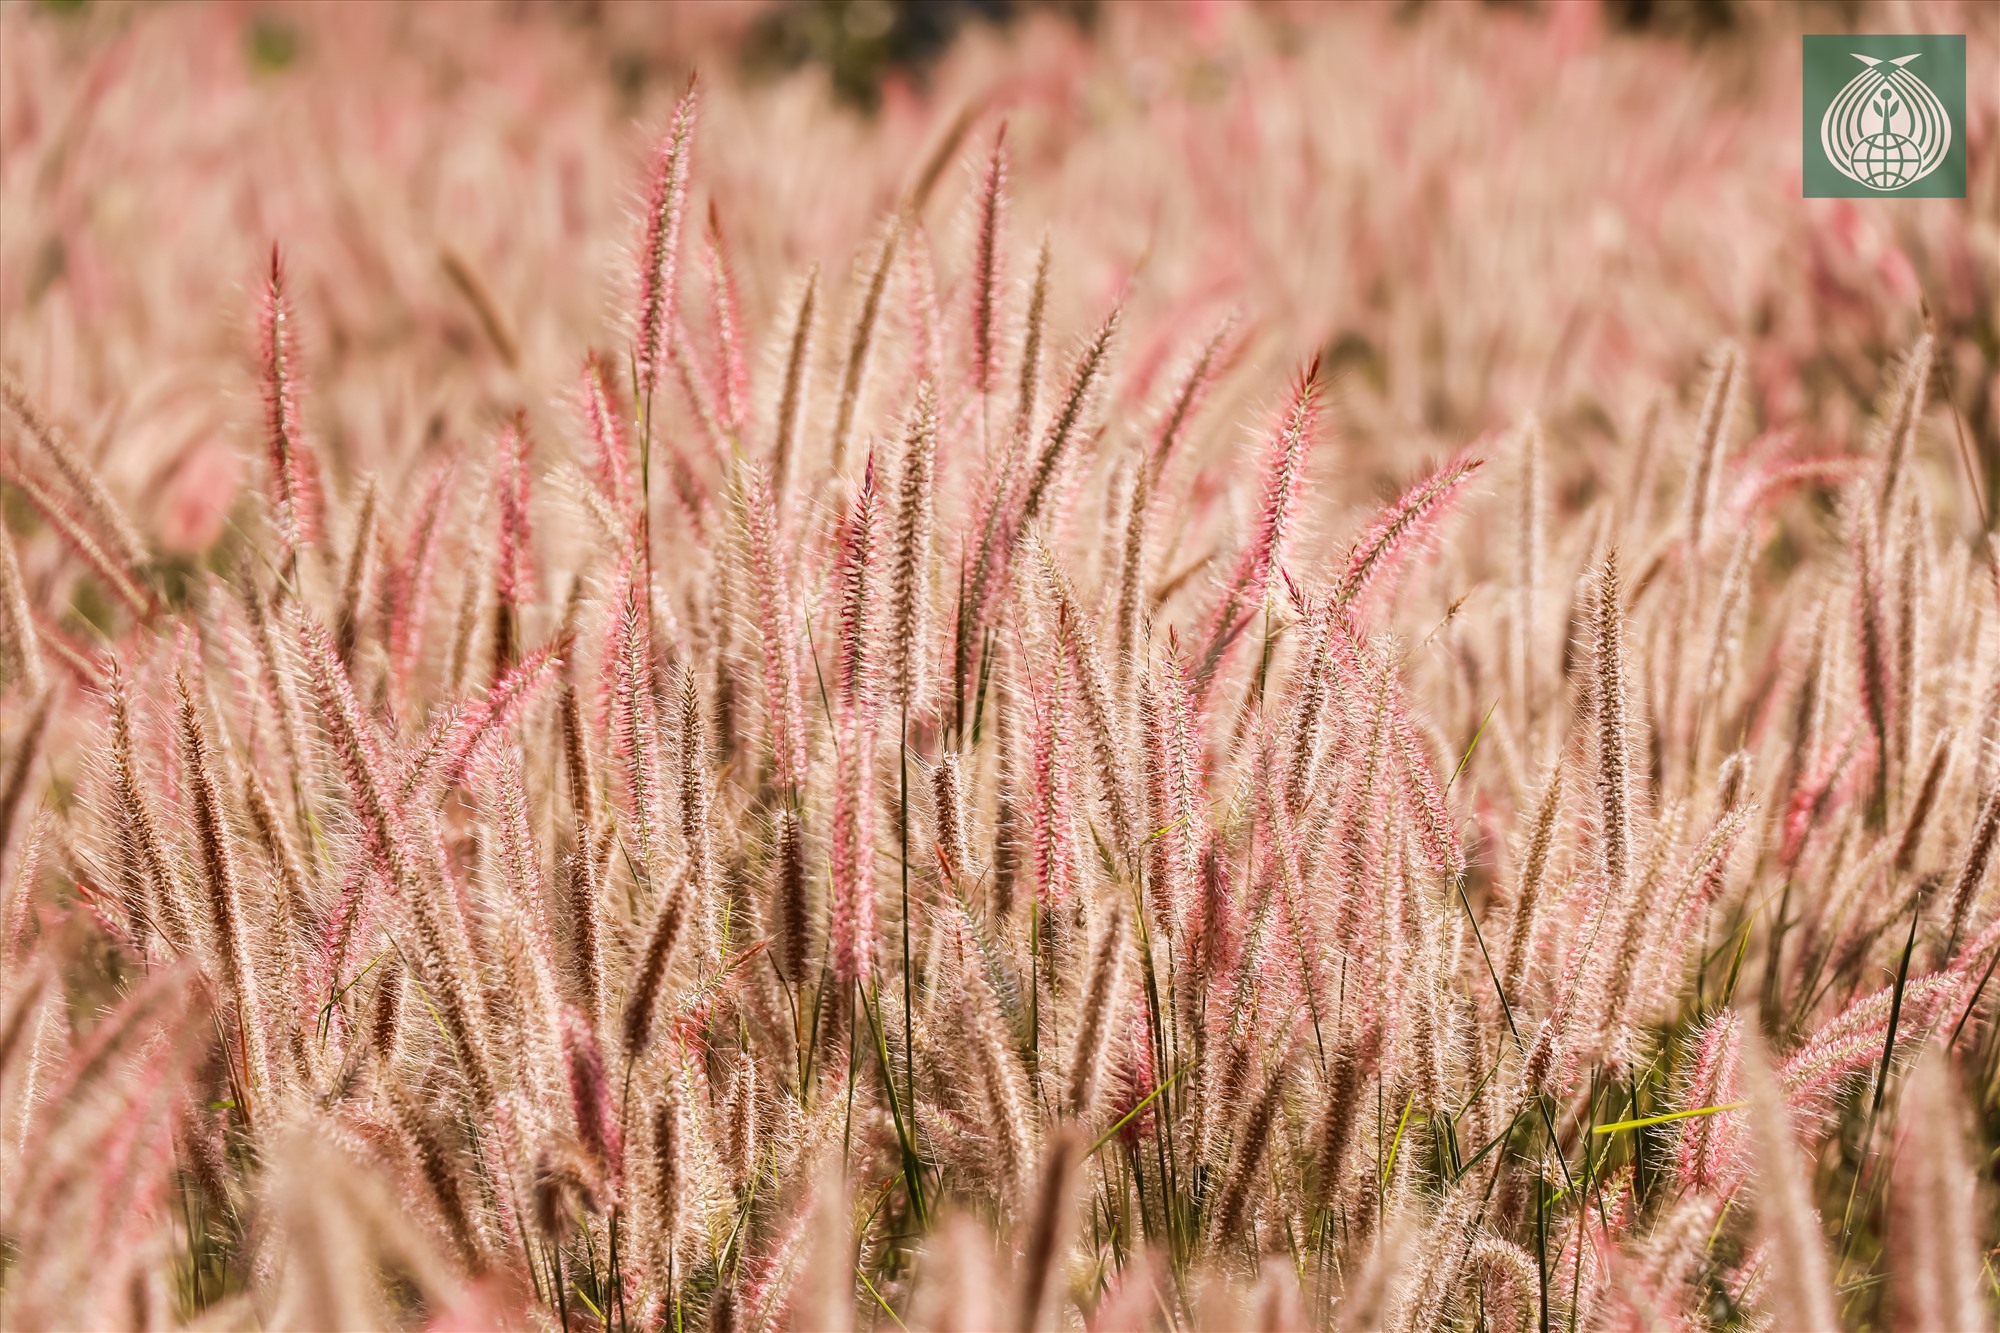 Đồi cỏ lau hồng tuy không rộng nhưng dưới ánh nắng vàng mùa xuân, đã tạo nên một cảnh đẹp thơ mộng nơi miền tây Quảng Trị.